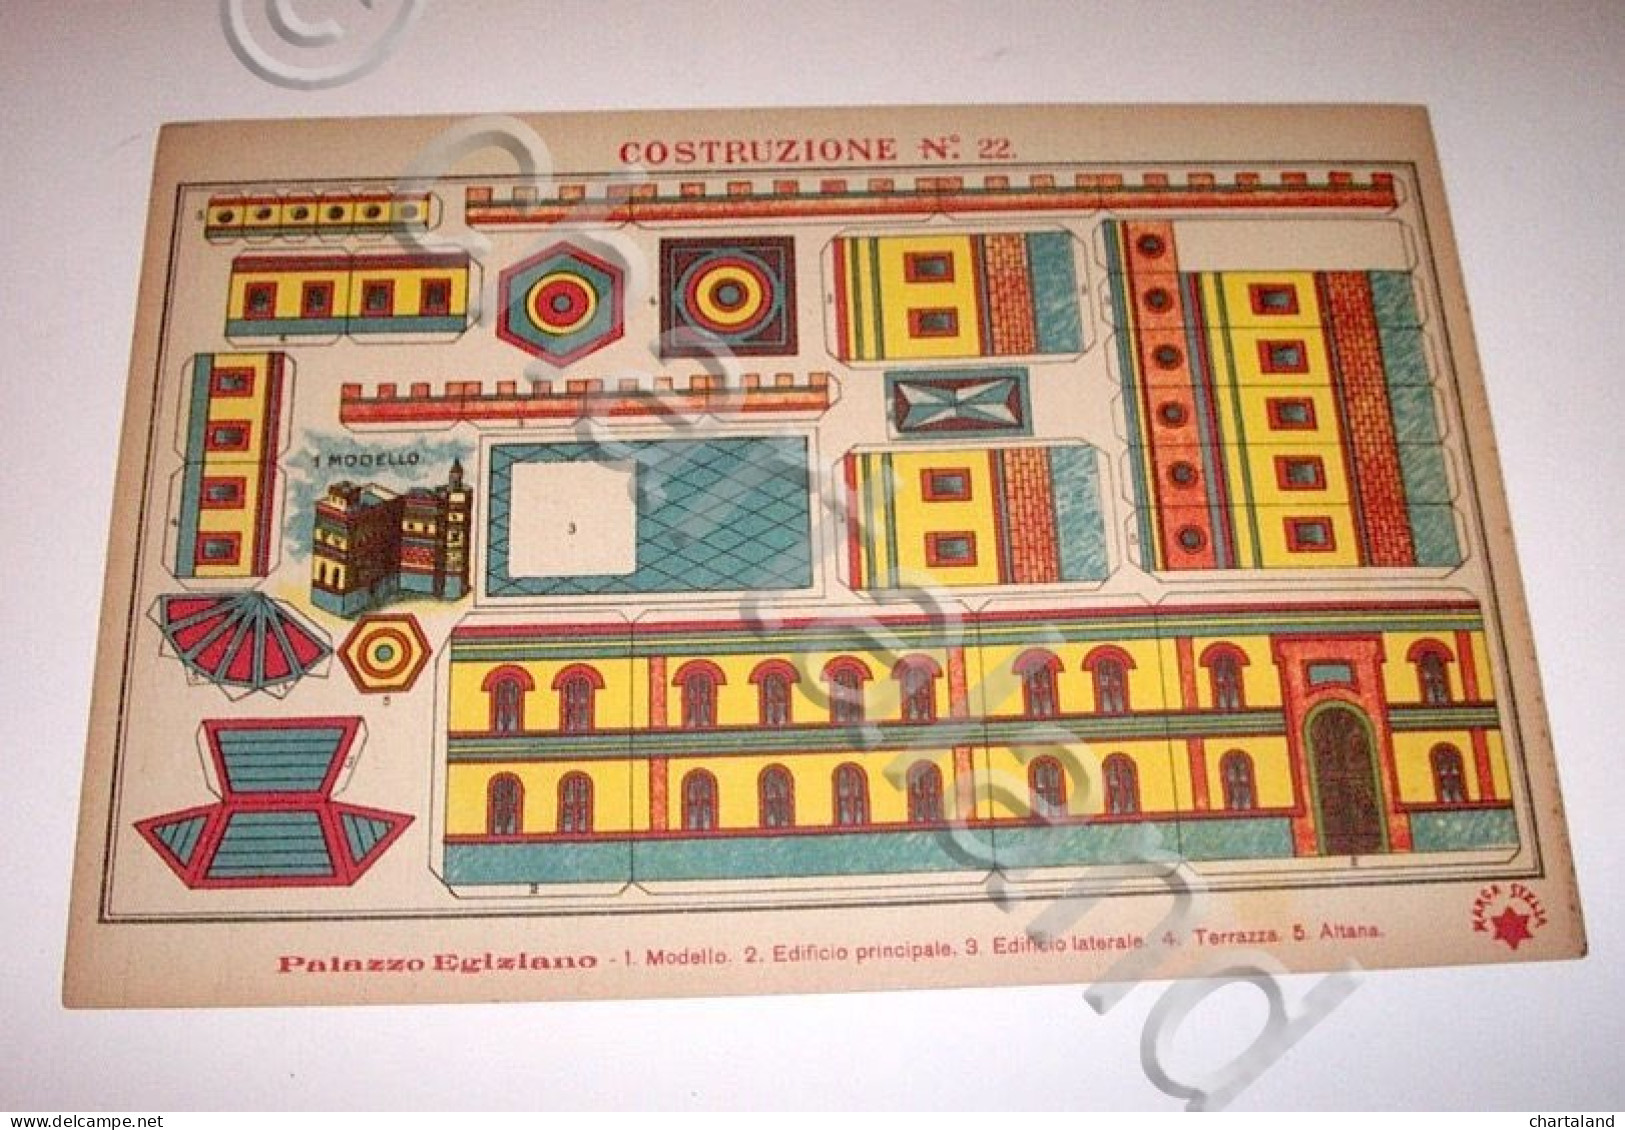 Marca Stella Originale Gioco Costruzioni N° 22 Palazzo Egiziano - 1930 Ca. - Giocattoli Antichi